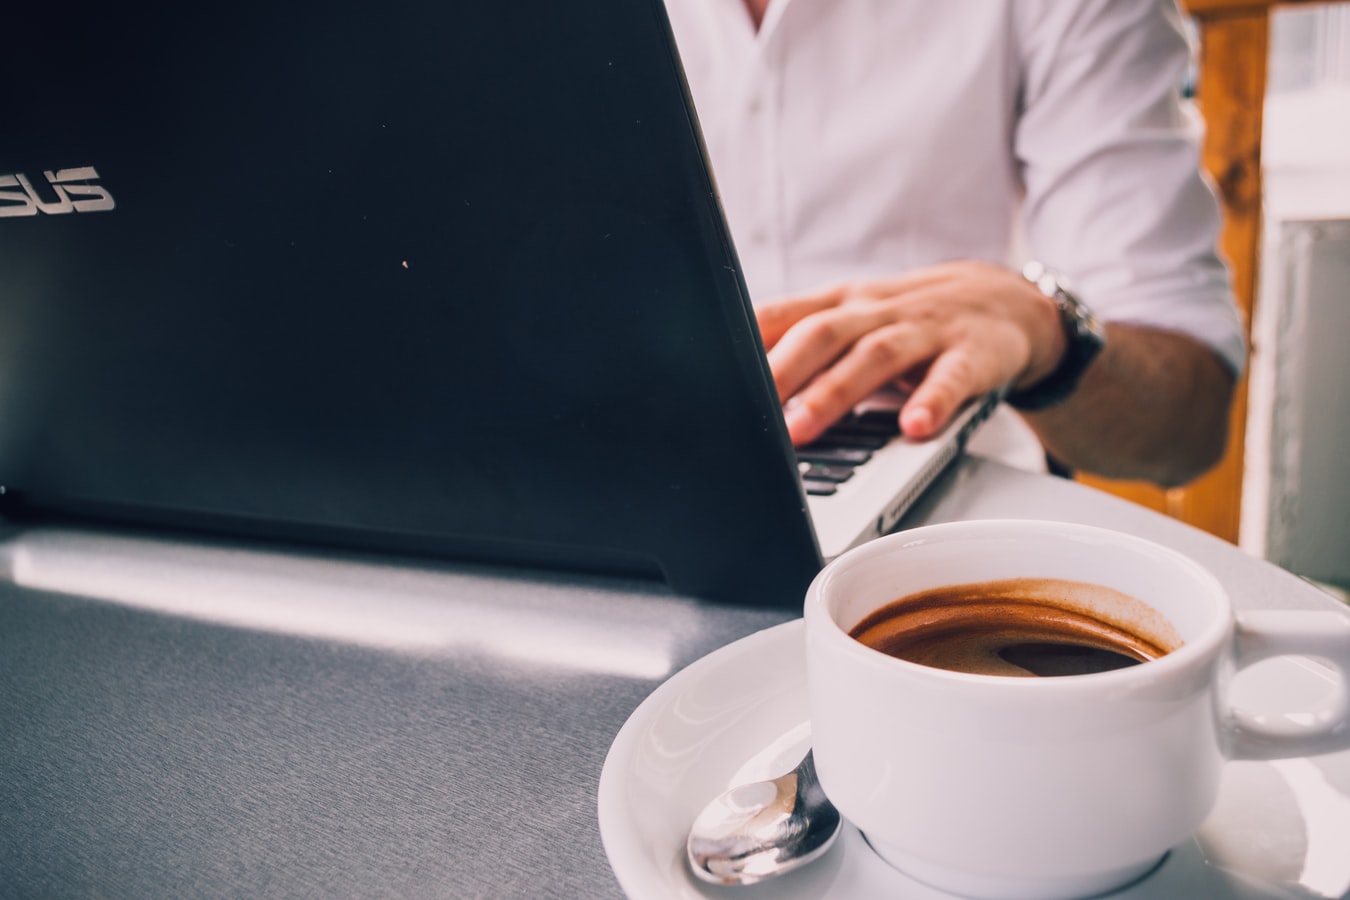 Um homem fazendo a consulta nfe completa em seu computador enquanto toma uma xícara de café.